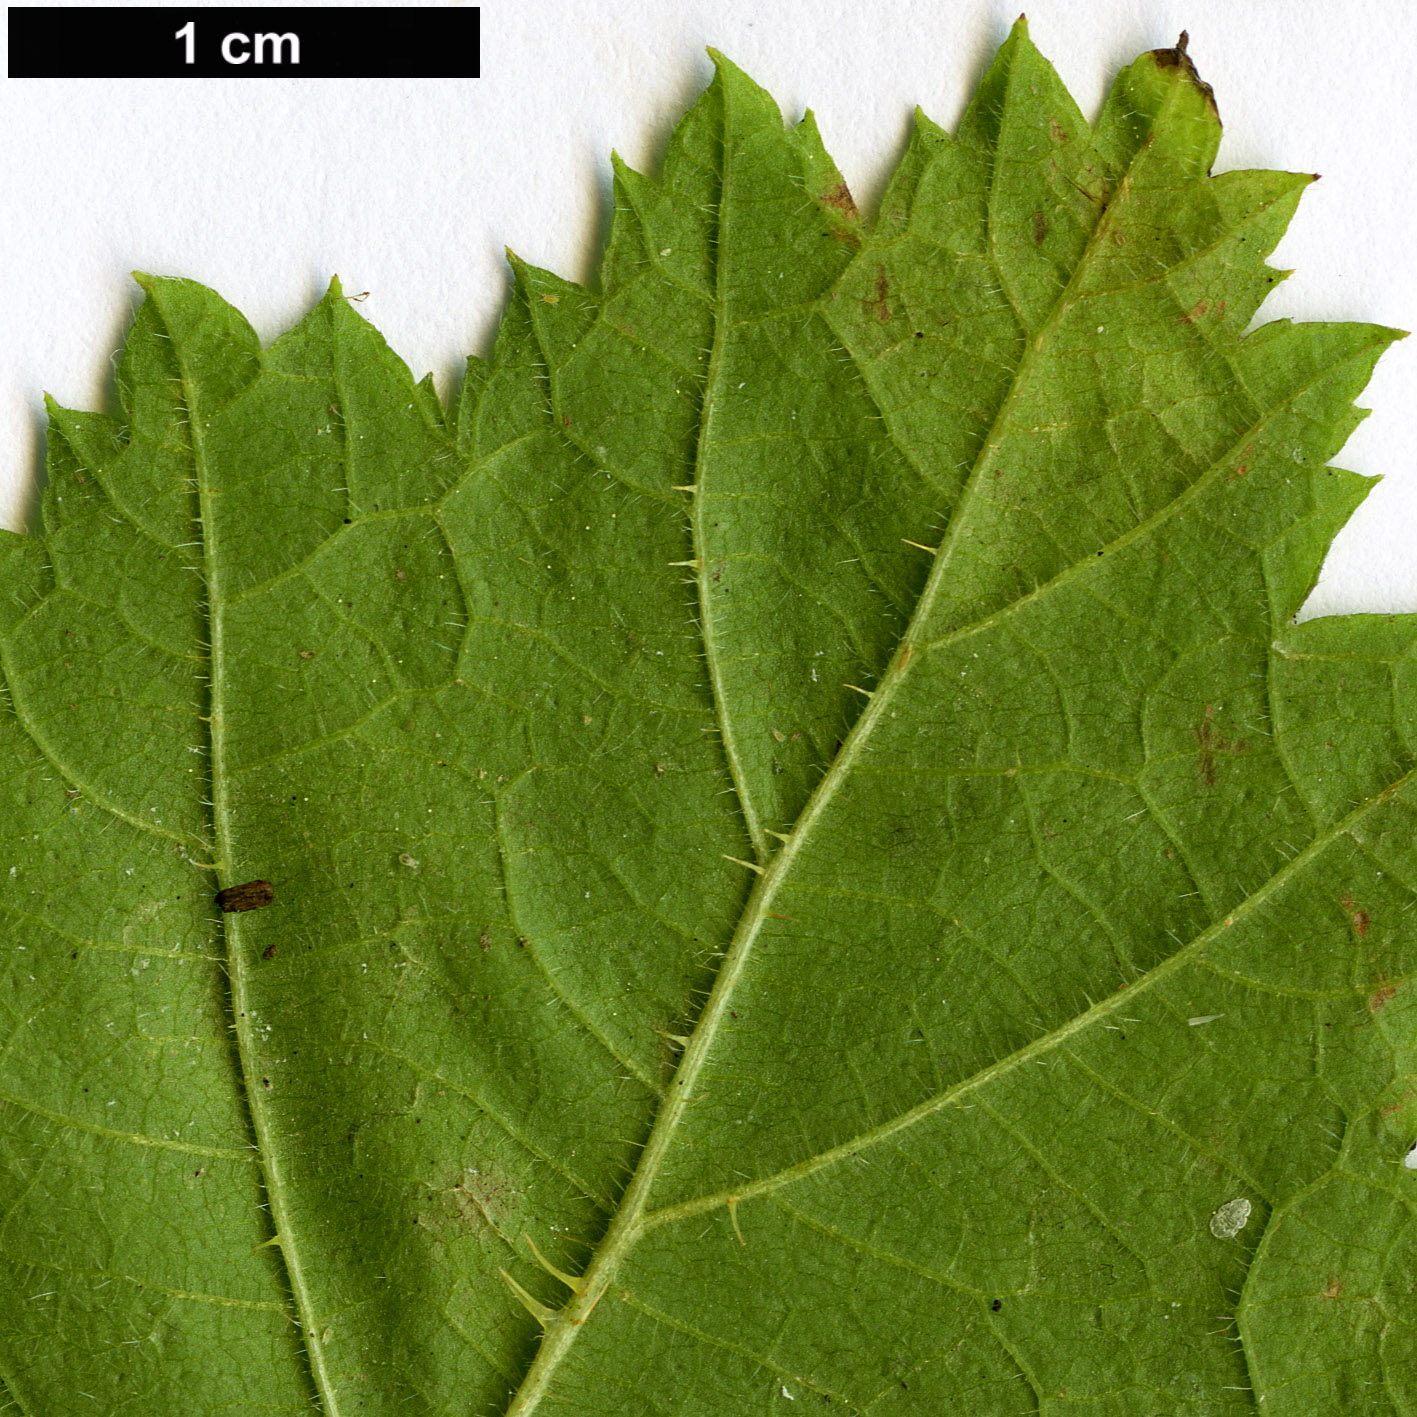 High resolution image: Family: Rosaceae - Genus: Rubus - Taxon: nagasawanus